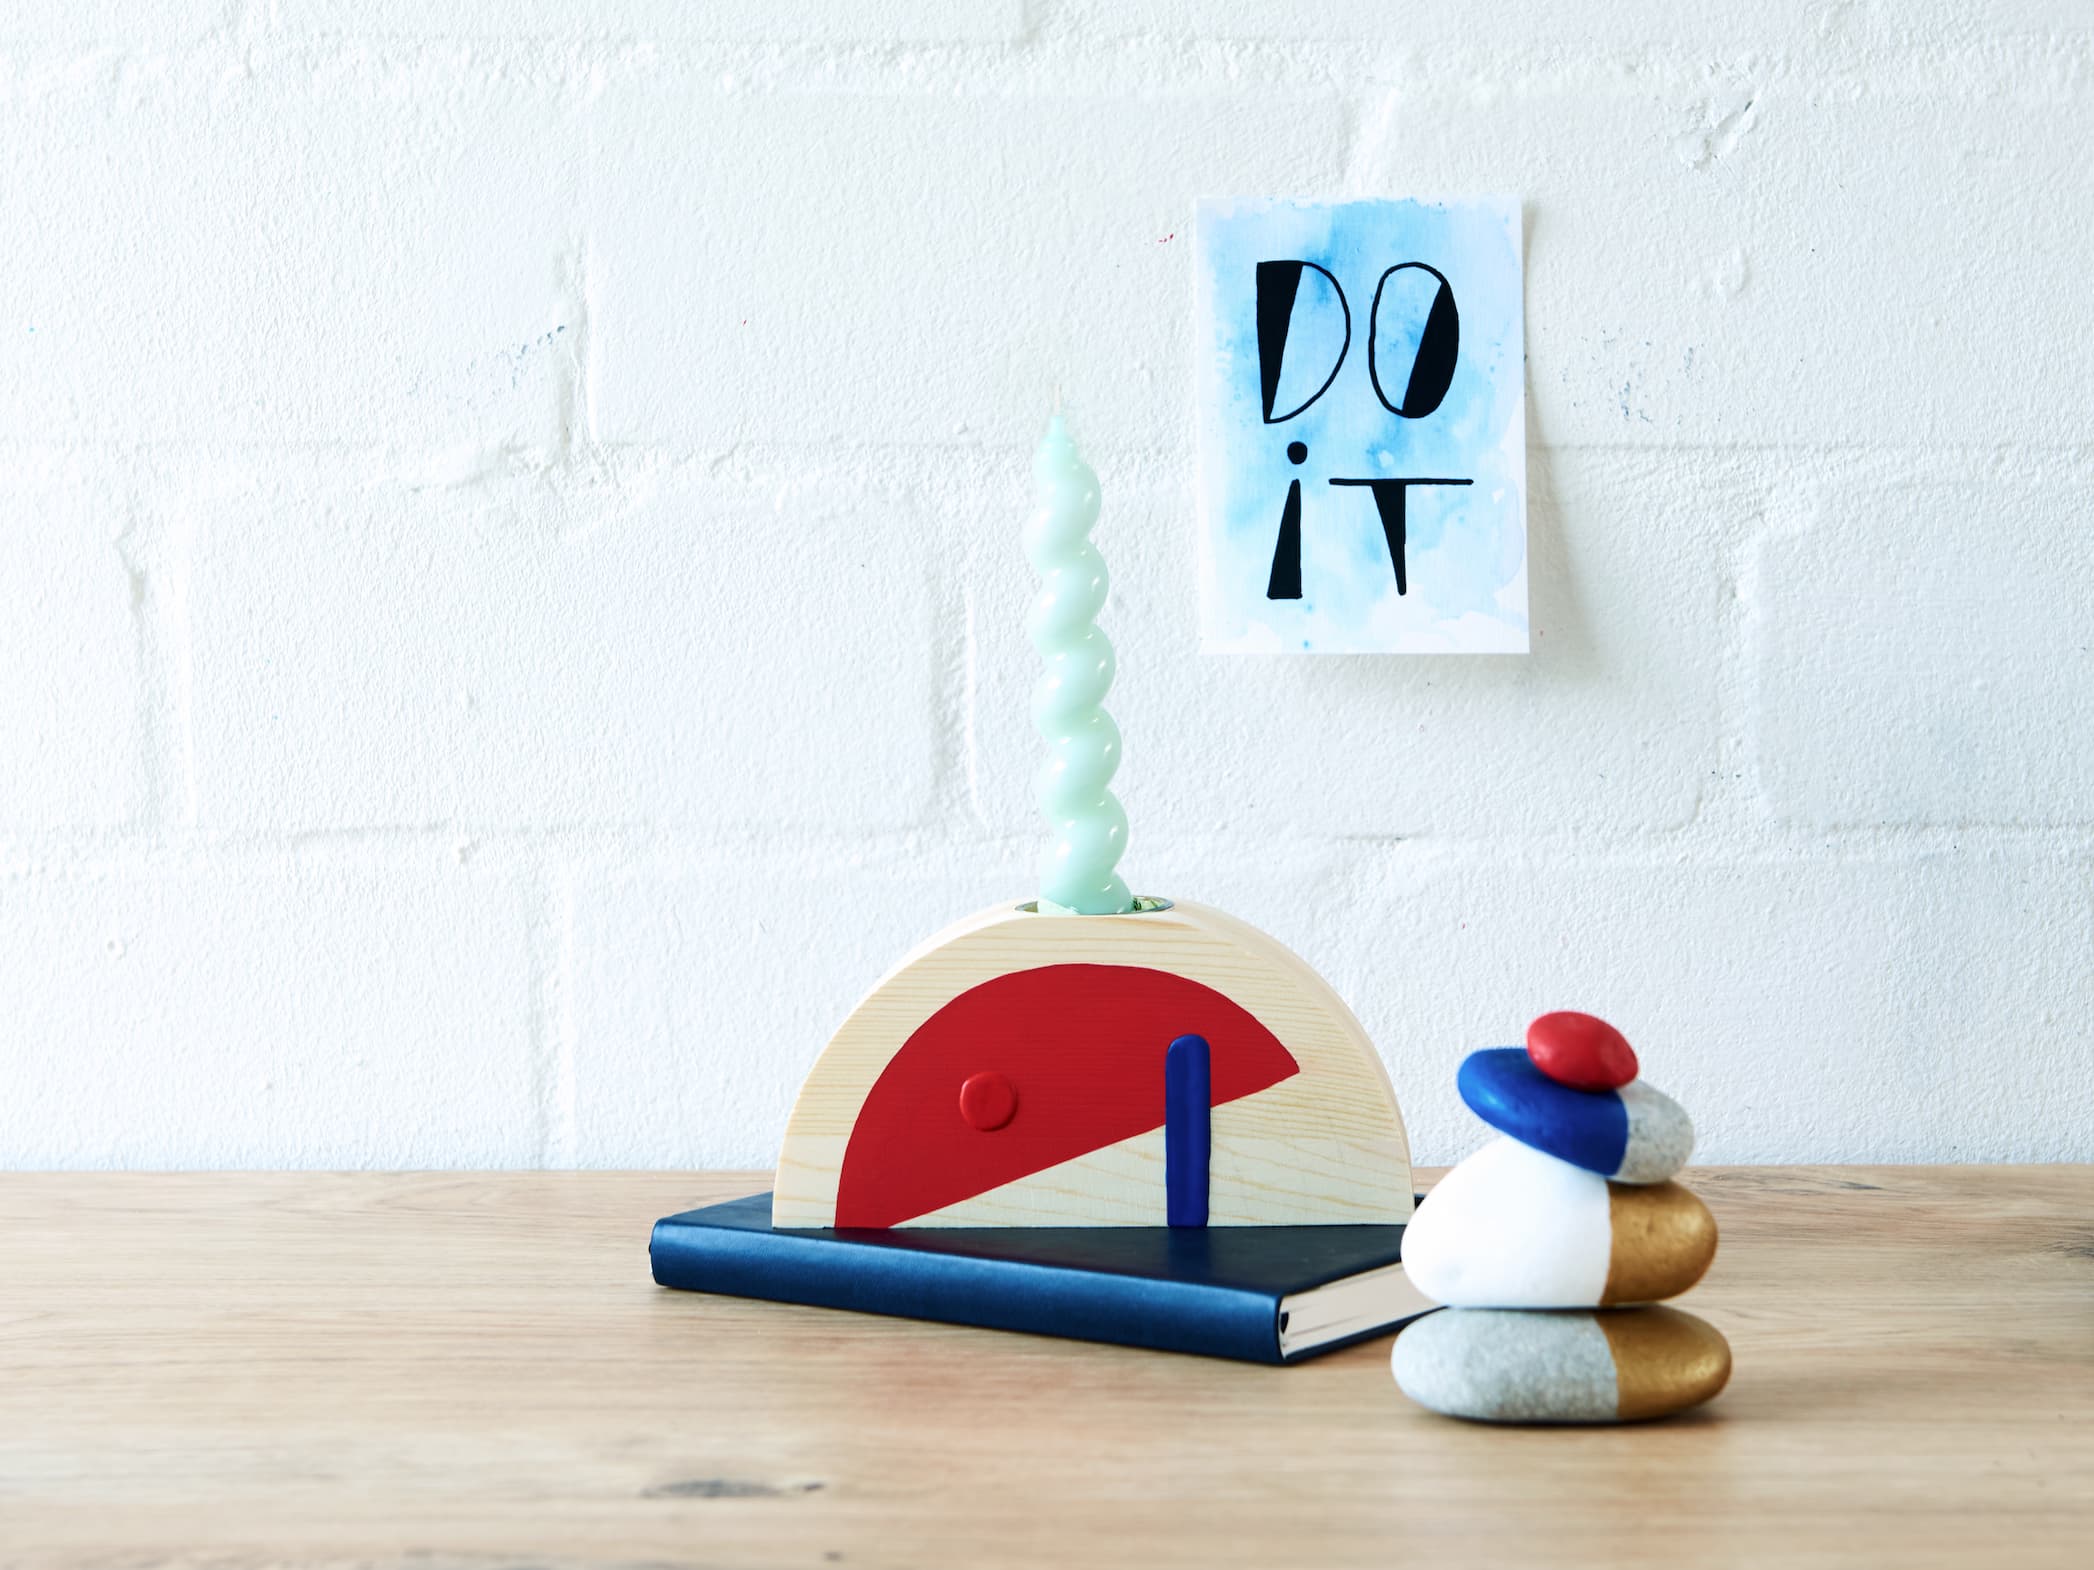 Ein minimalistischer Schreibtischaufbau mit einem abstrakten hölzernen Schreibtischspielzeug, einer Spiralkerze, einem Stapel balancierender Steine und einem Motivationsposter mit den Worten „do it“ in edding 5000 Acrylmarker breit.